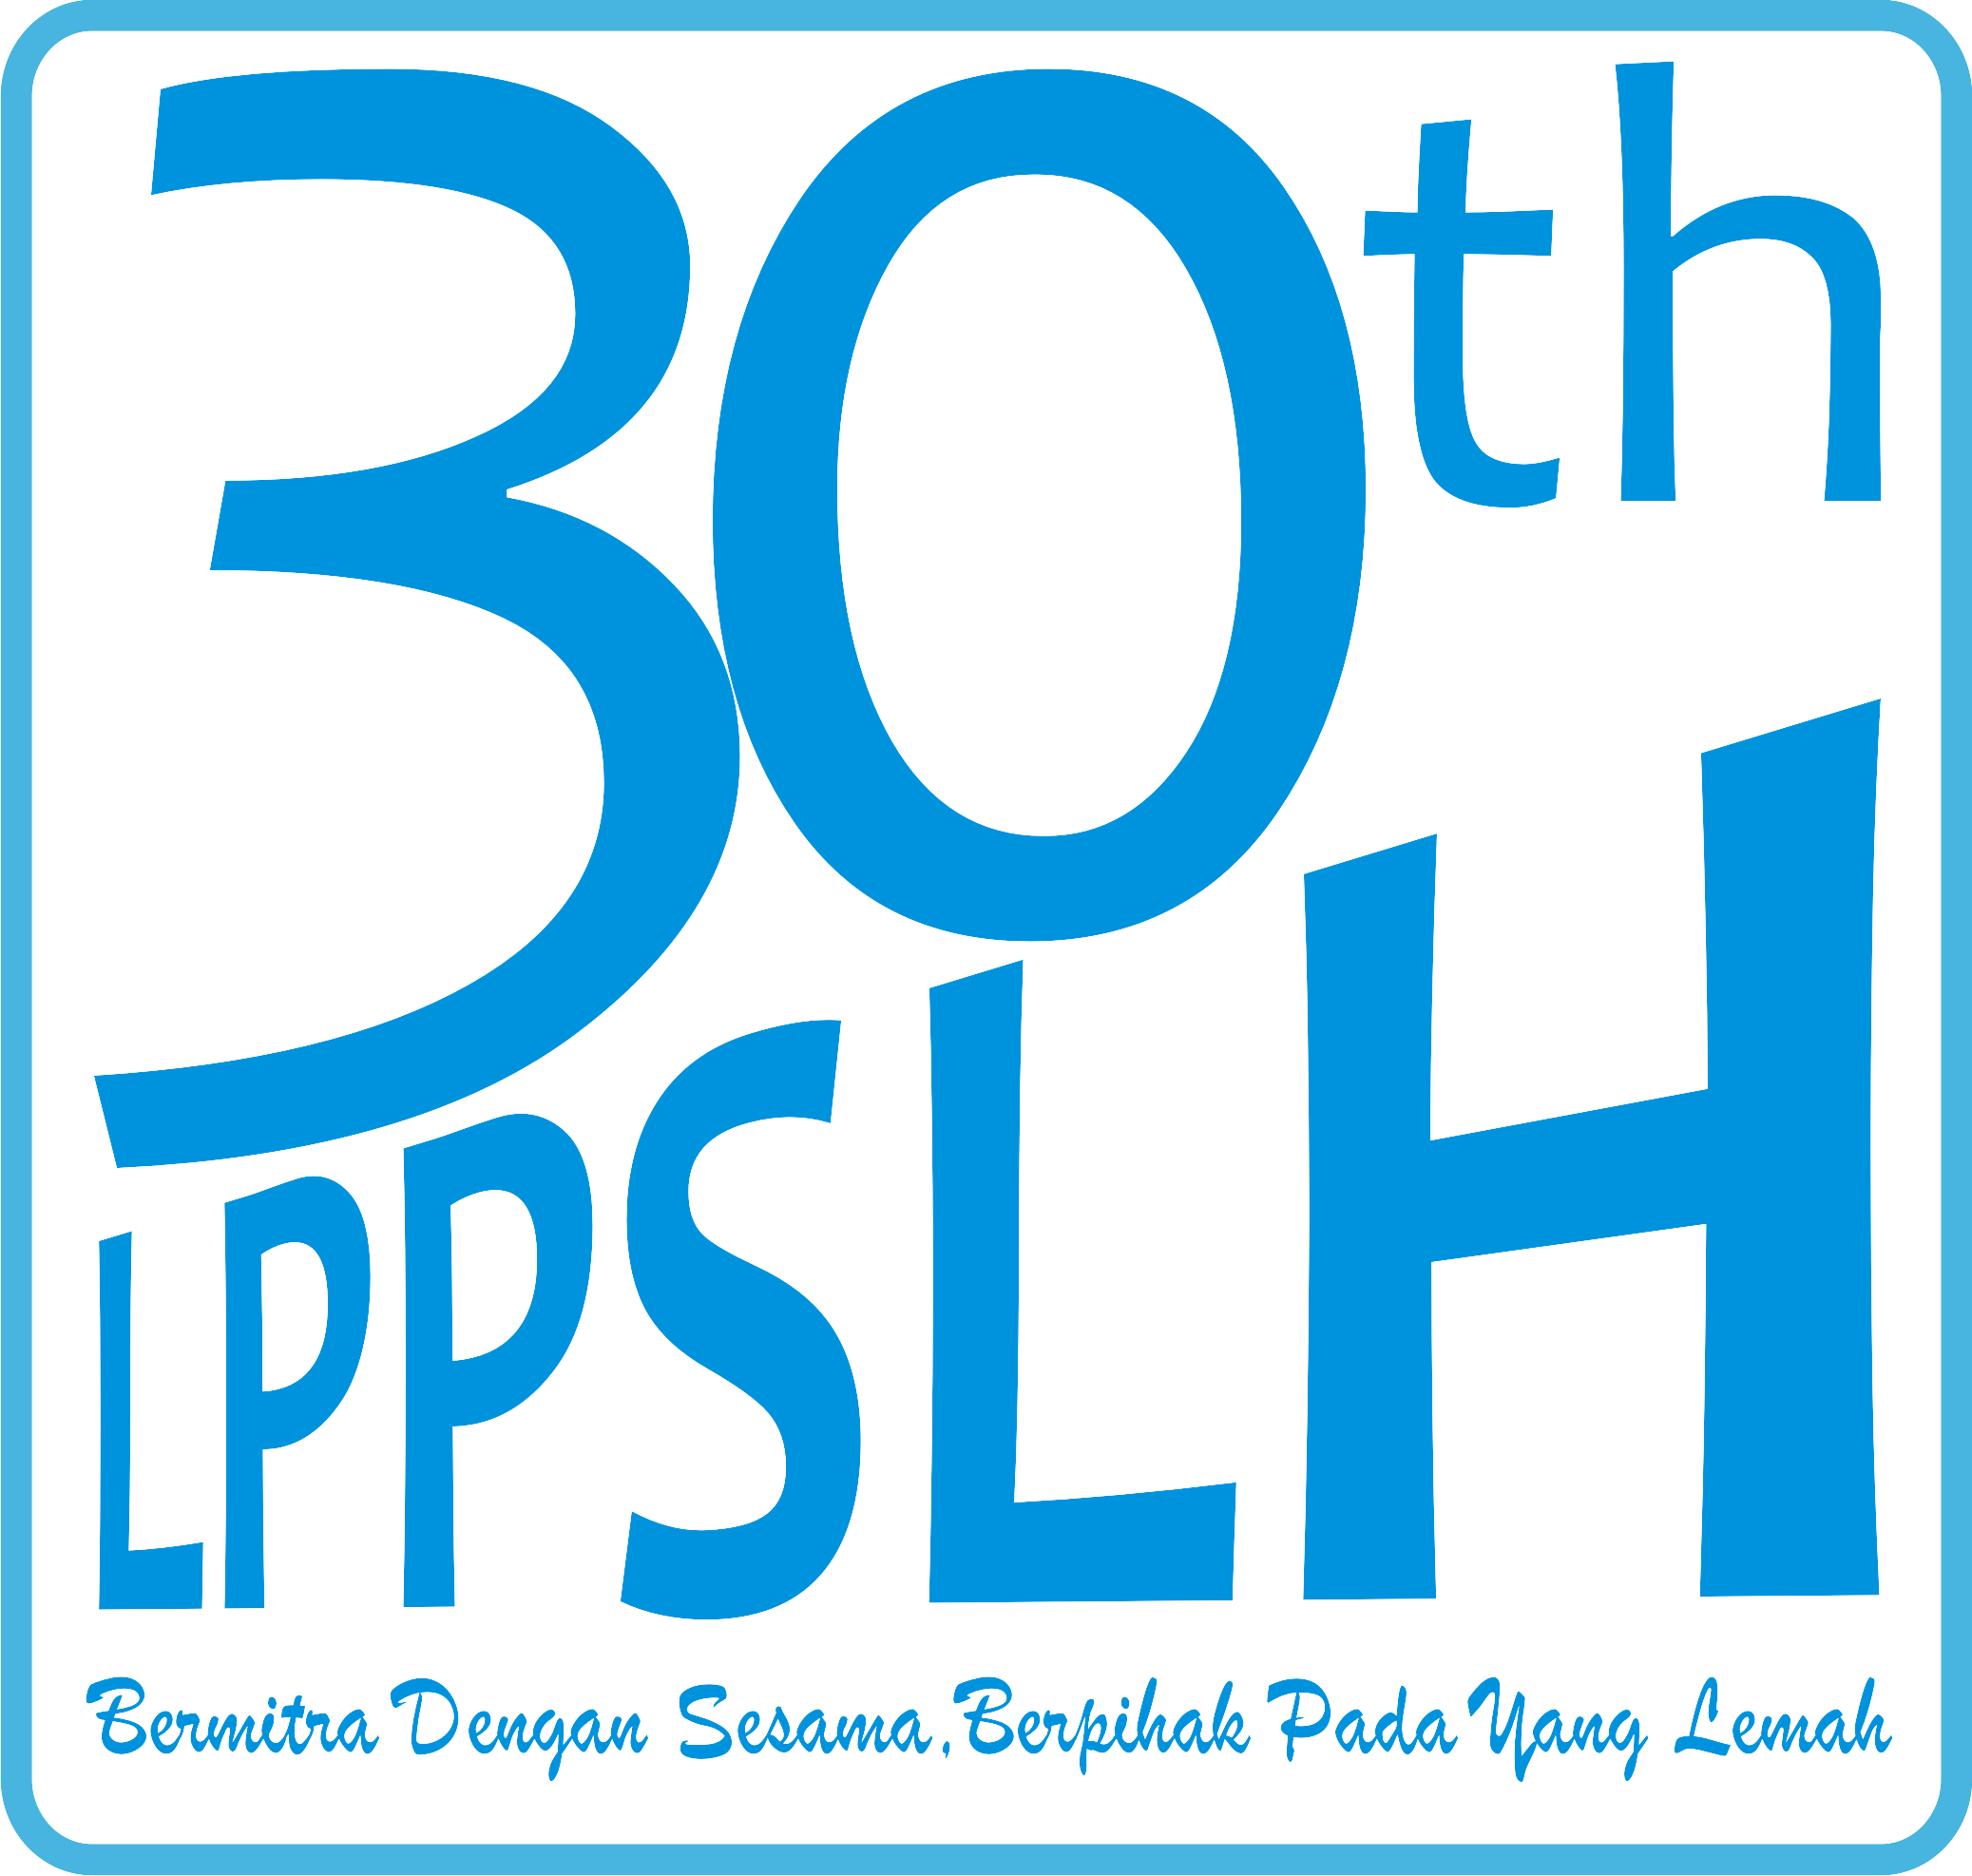 30 Tahun LPPSLH Hadir Di Tengah Masyarakat Indonesia